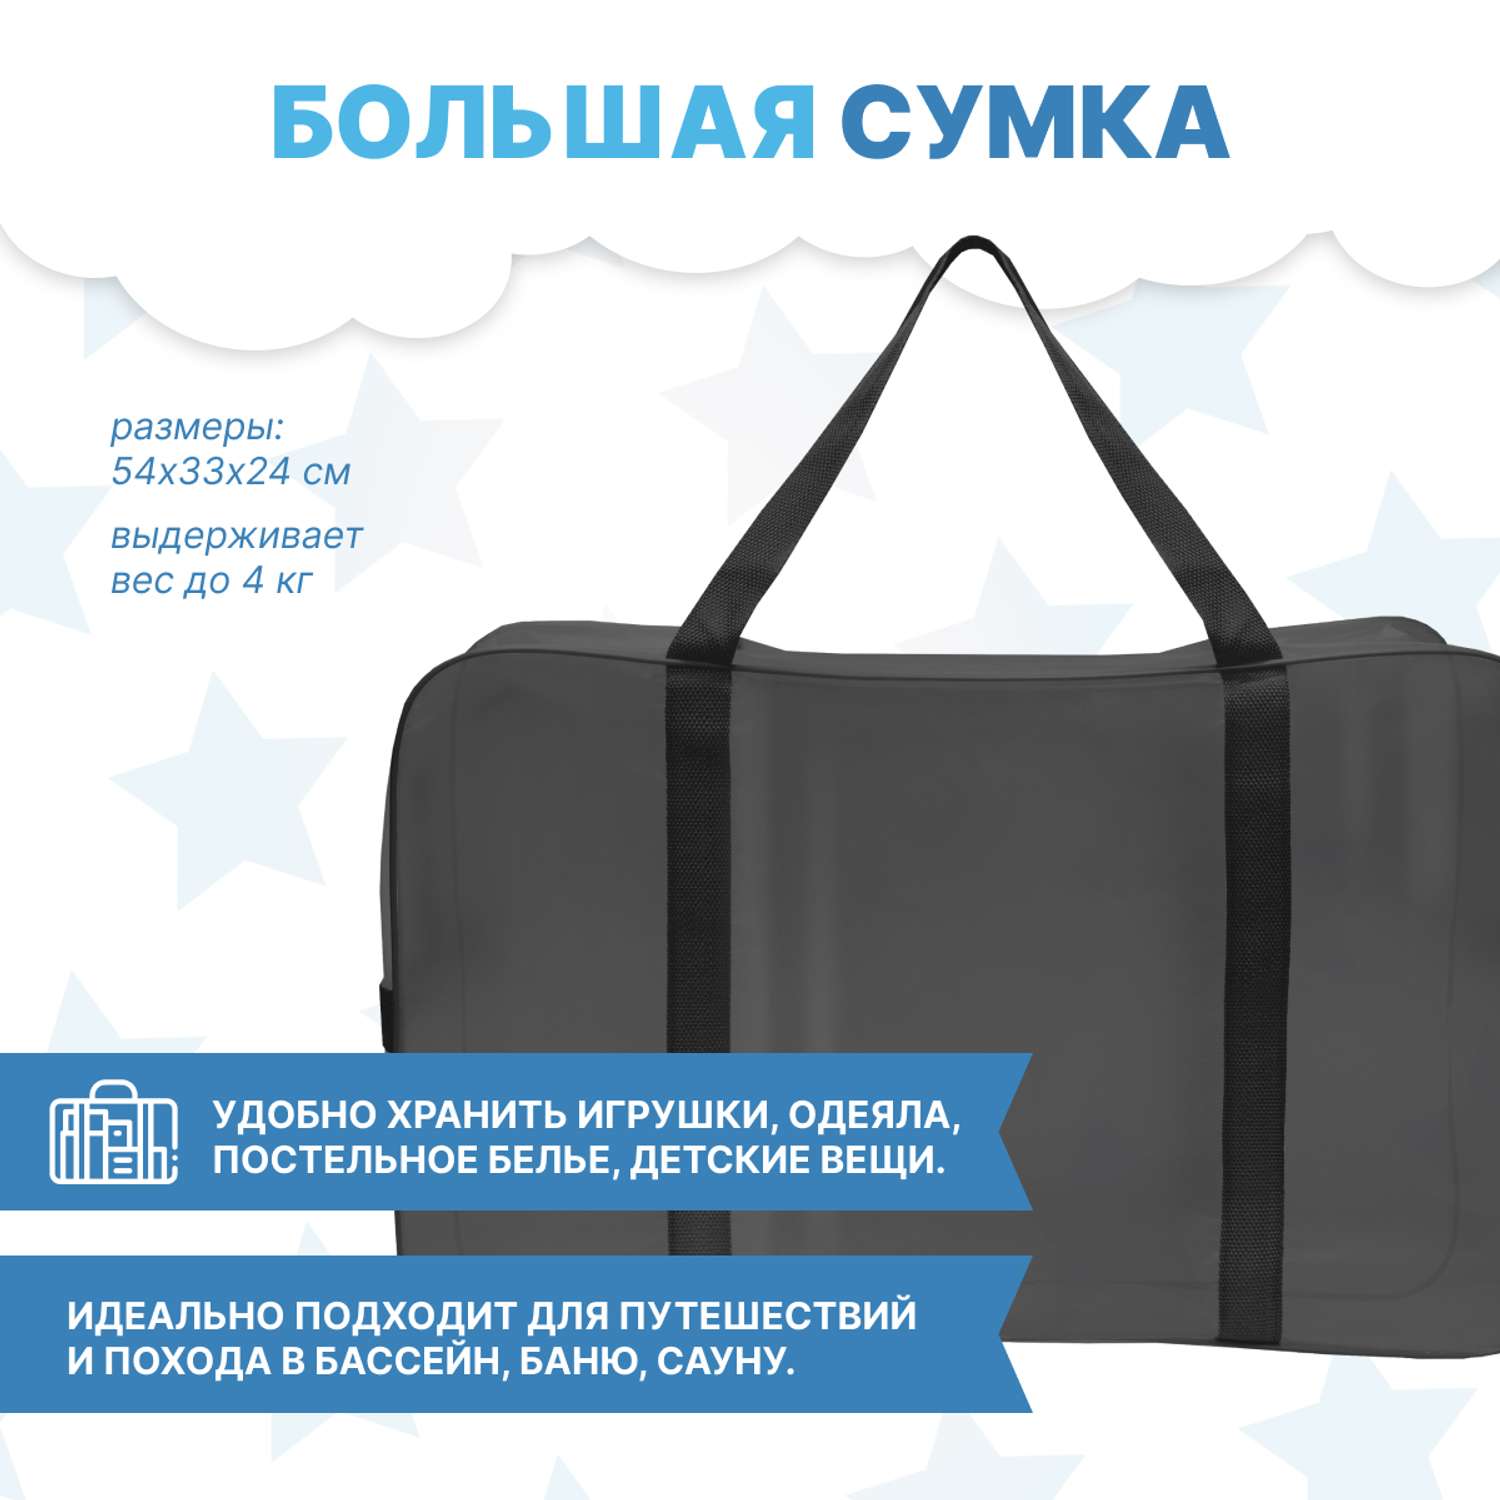 Набор для роддома ForBaby прозрачные сумки 3 шт - черный цвет - фото 8